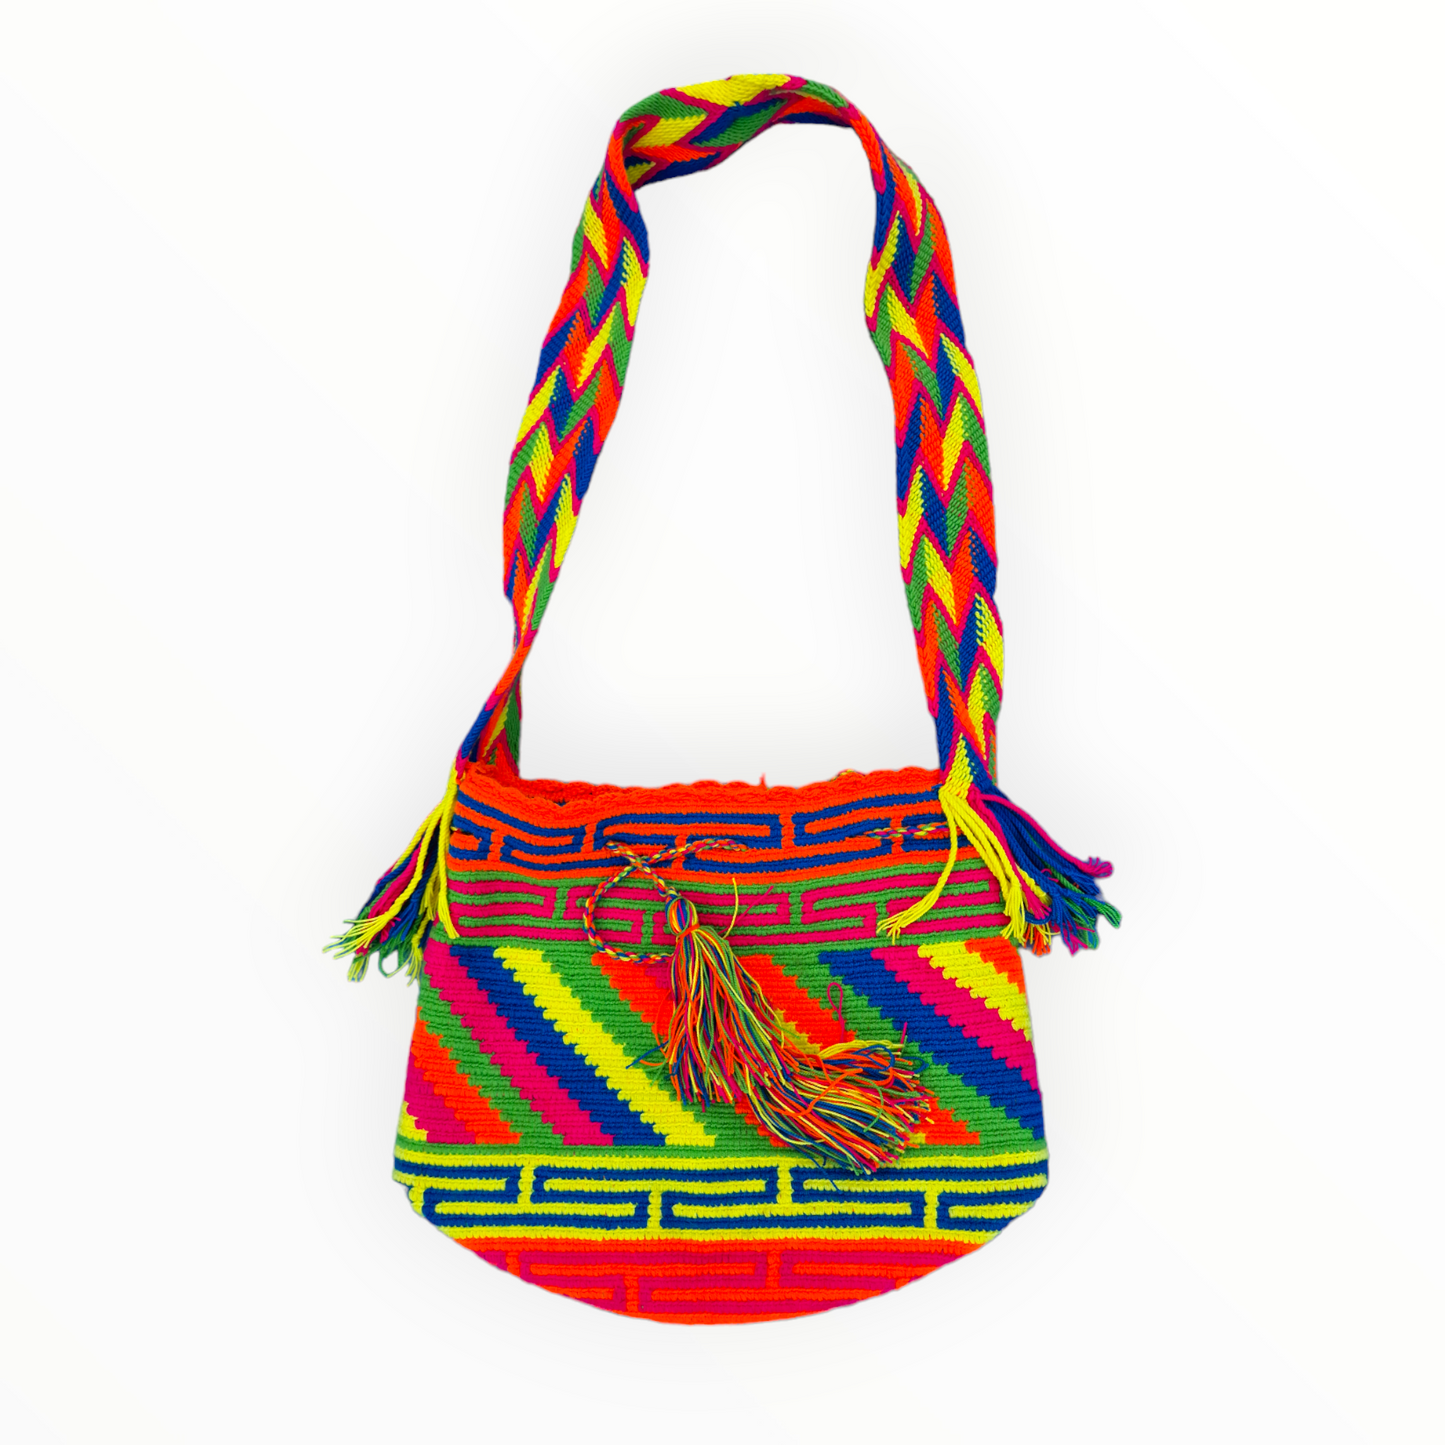 Mochila Wayuu Tasche Multicolor Schwarz - Handgemachte farbenfrohe Tasche - Crossbody-Tasche Mochila